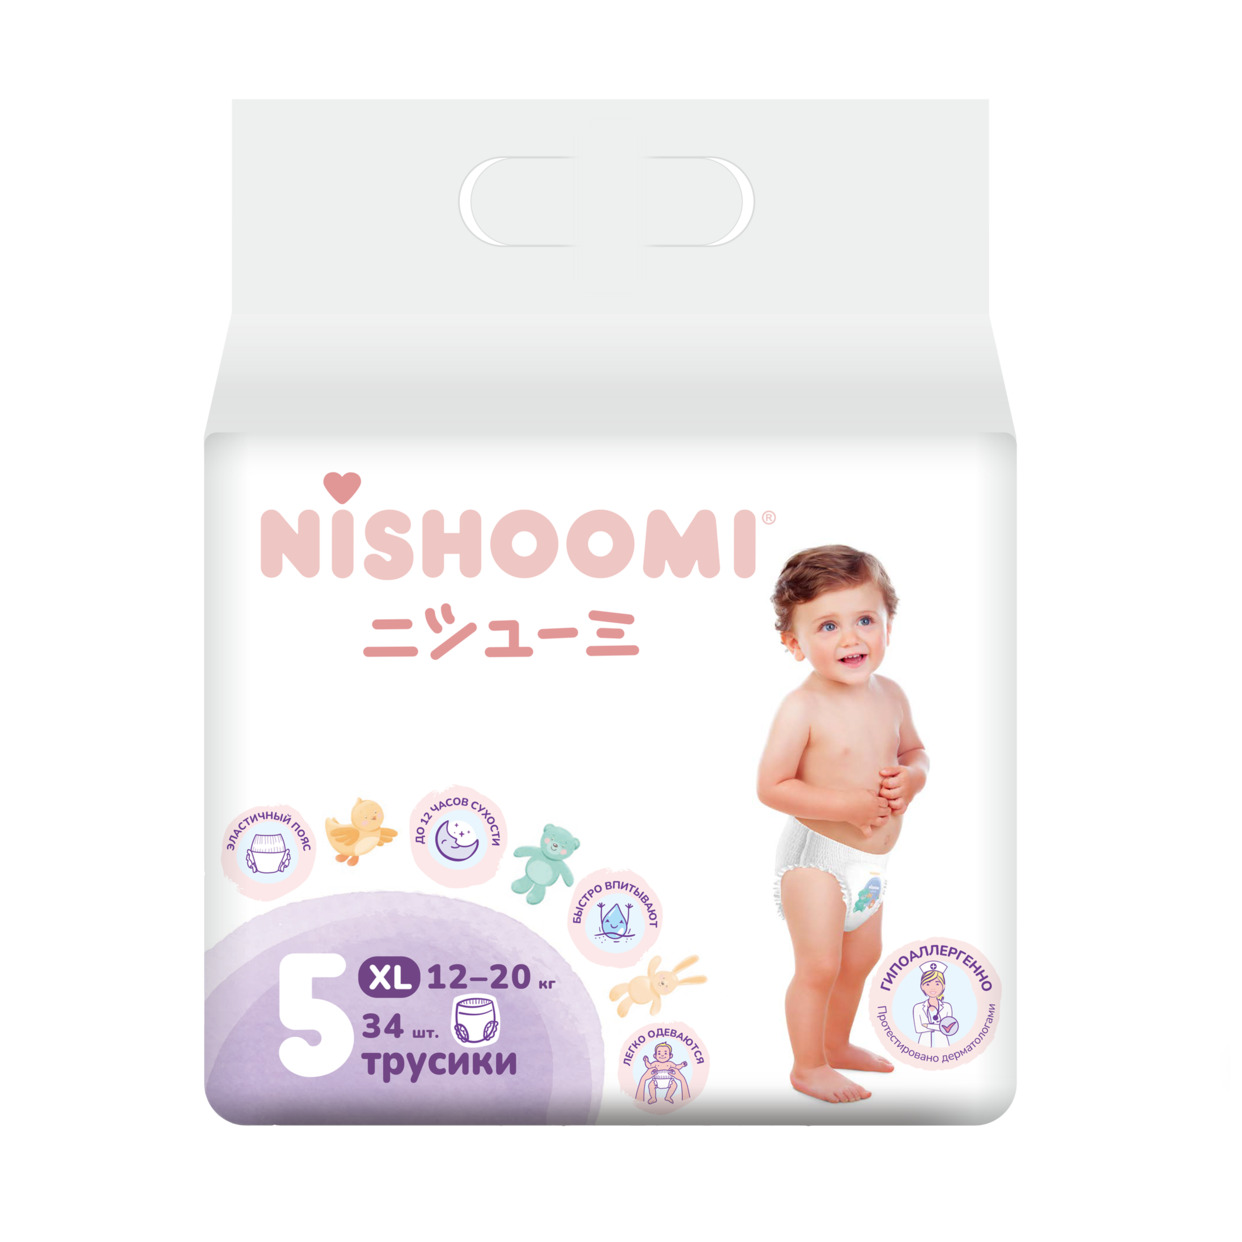 Изделия санитарно-гигиенические для ухода за детьми Nishoomi подгузники-трусики детские одноразовые. Размер «Макси» (XL (5)), для де тей весом 12-20 кг, 34 штуки в уп. по акции в Пятерочке